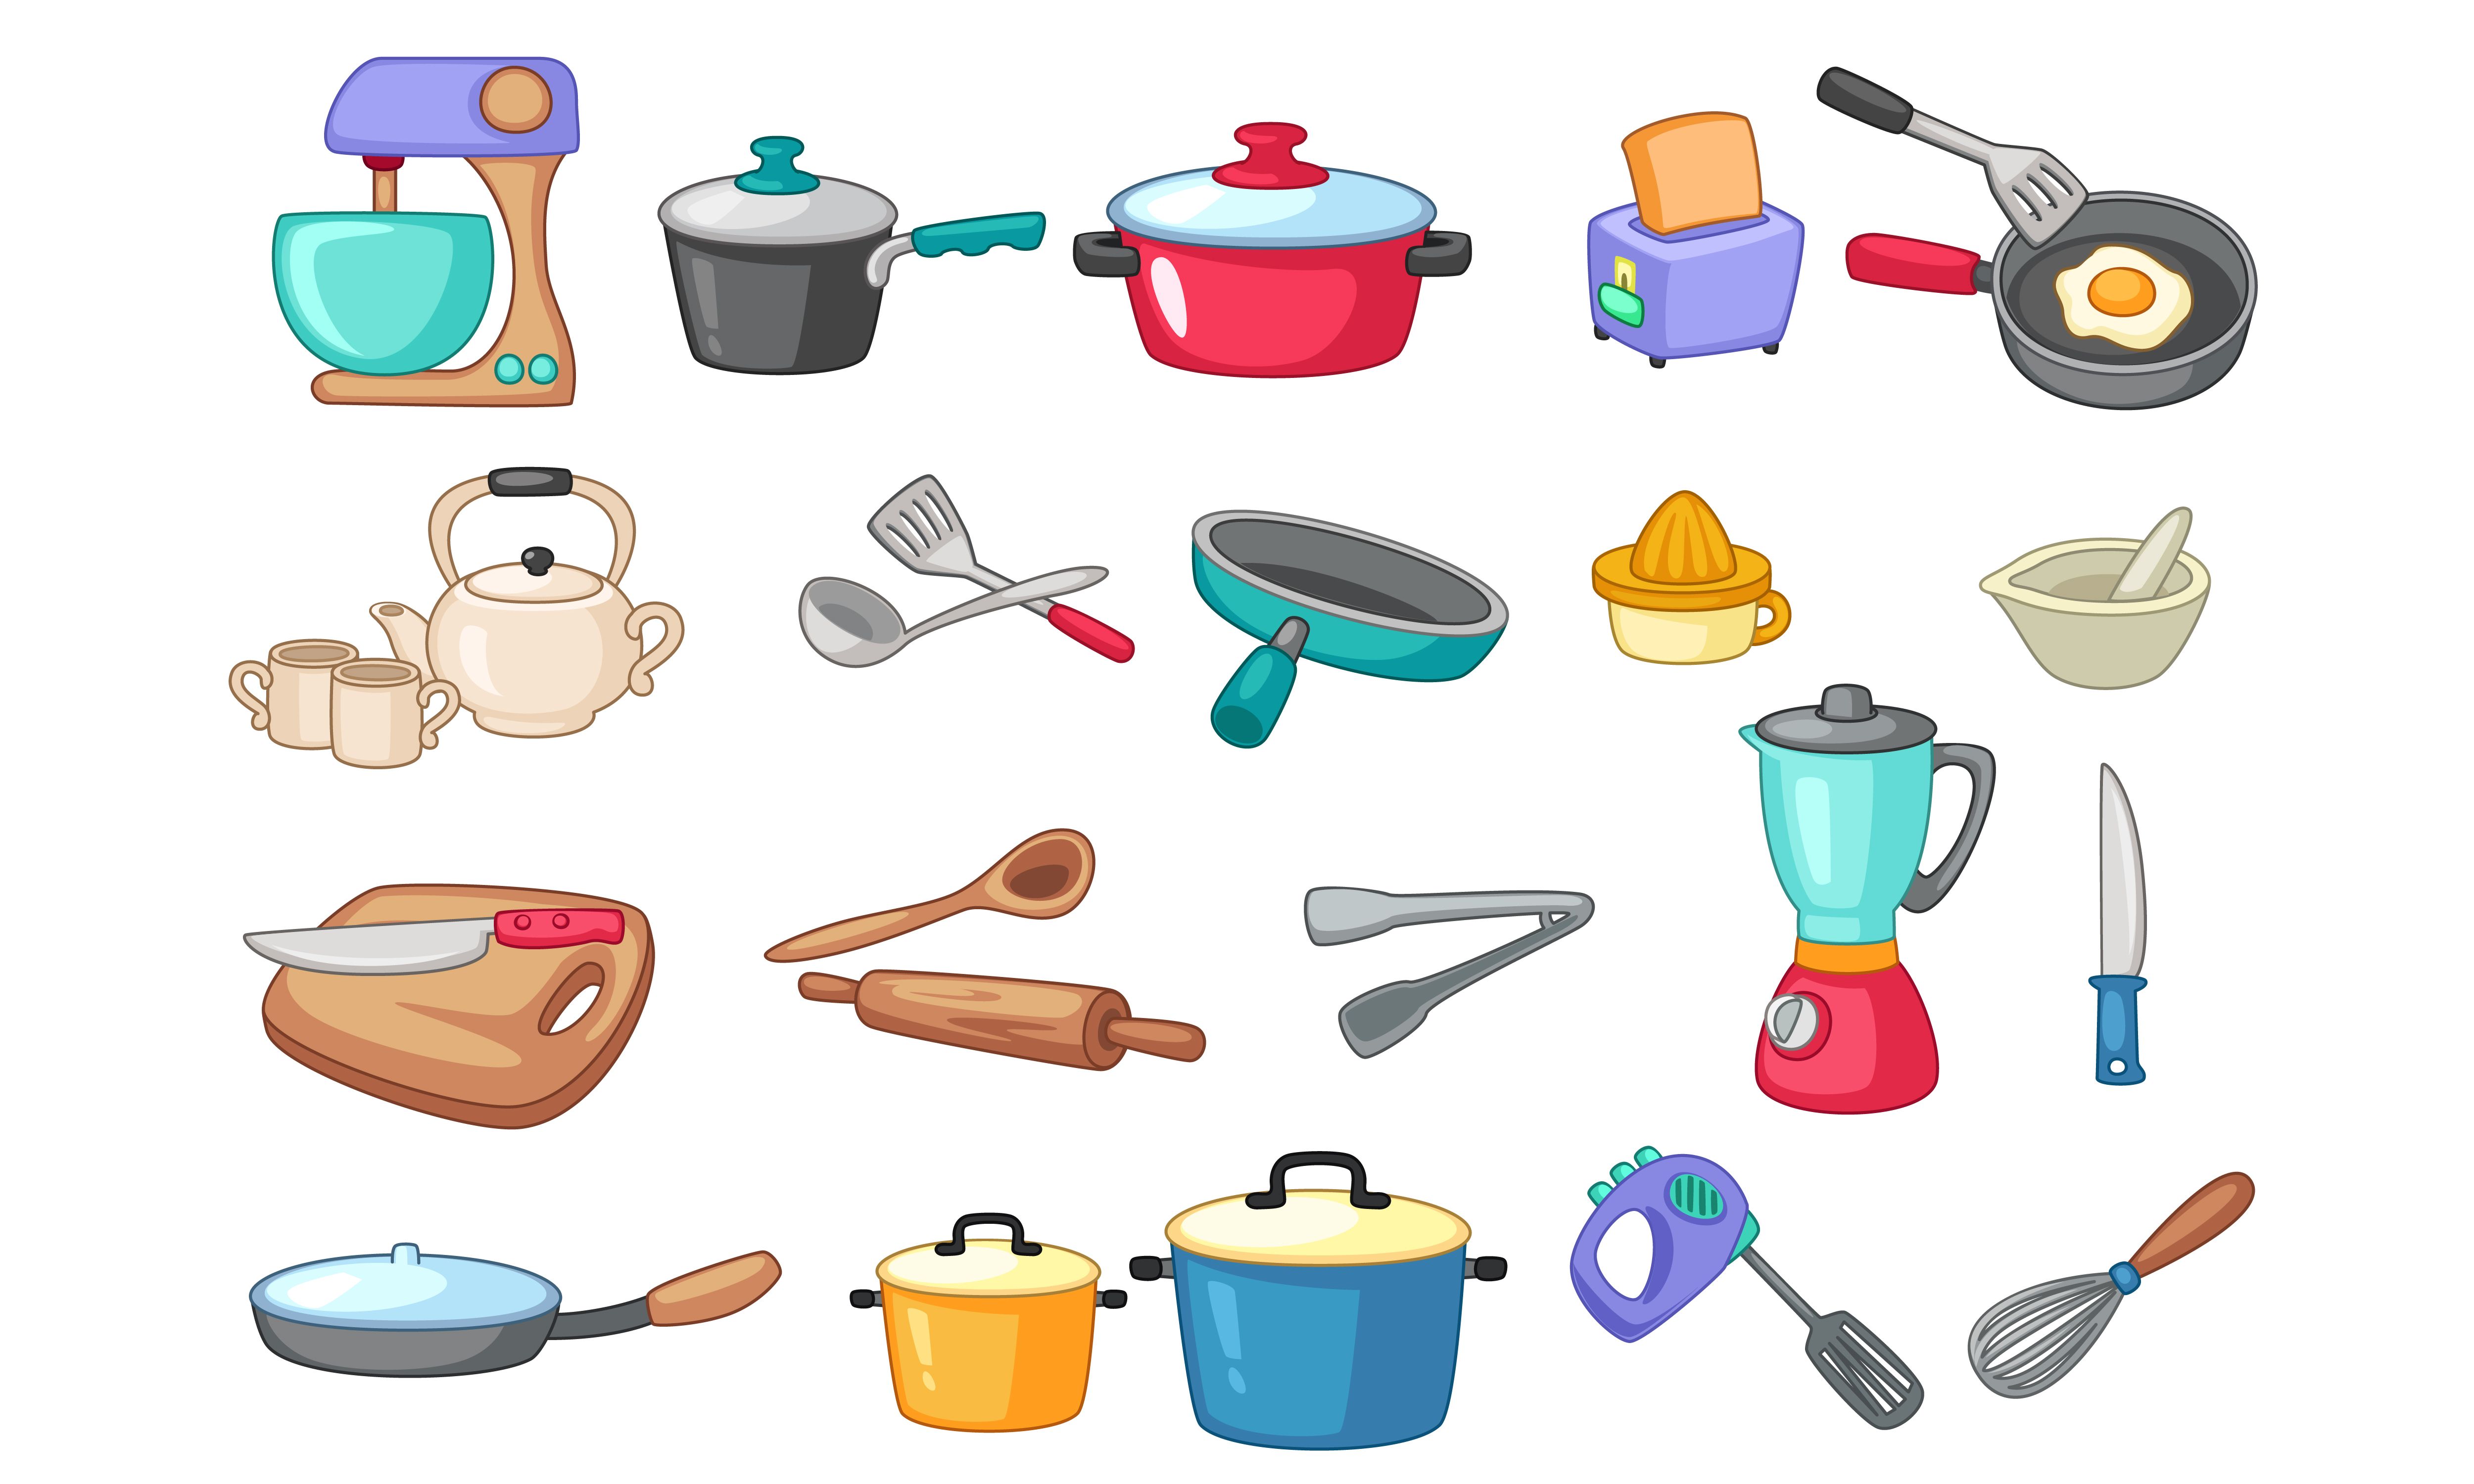 Посуда на букву а. Кухонная утварь. Предметы для кухни. Посуда и кухонные принадлежности для детей. Кухонное посуда для дитей.